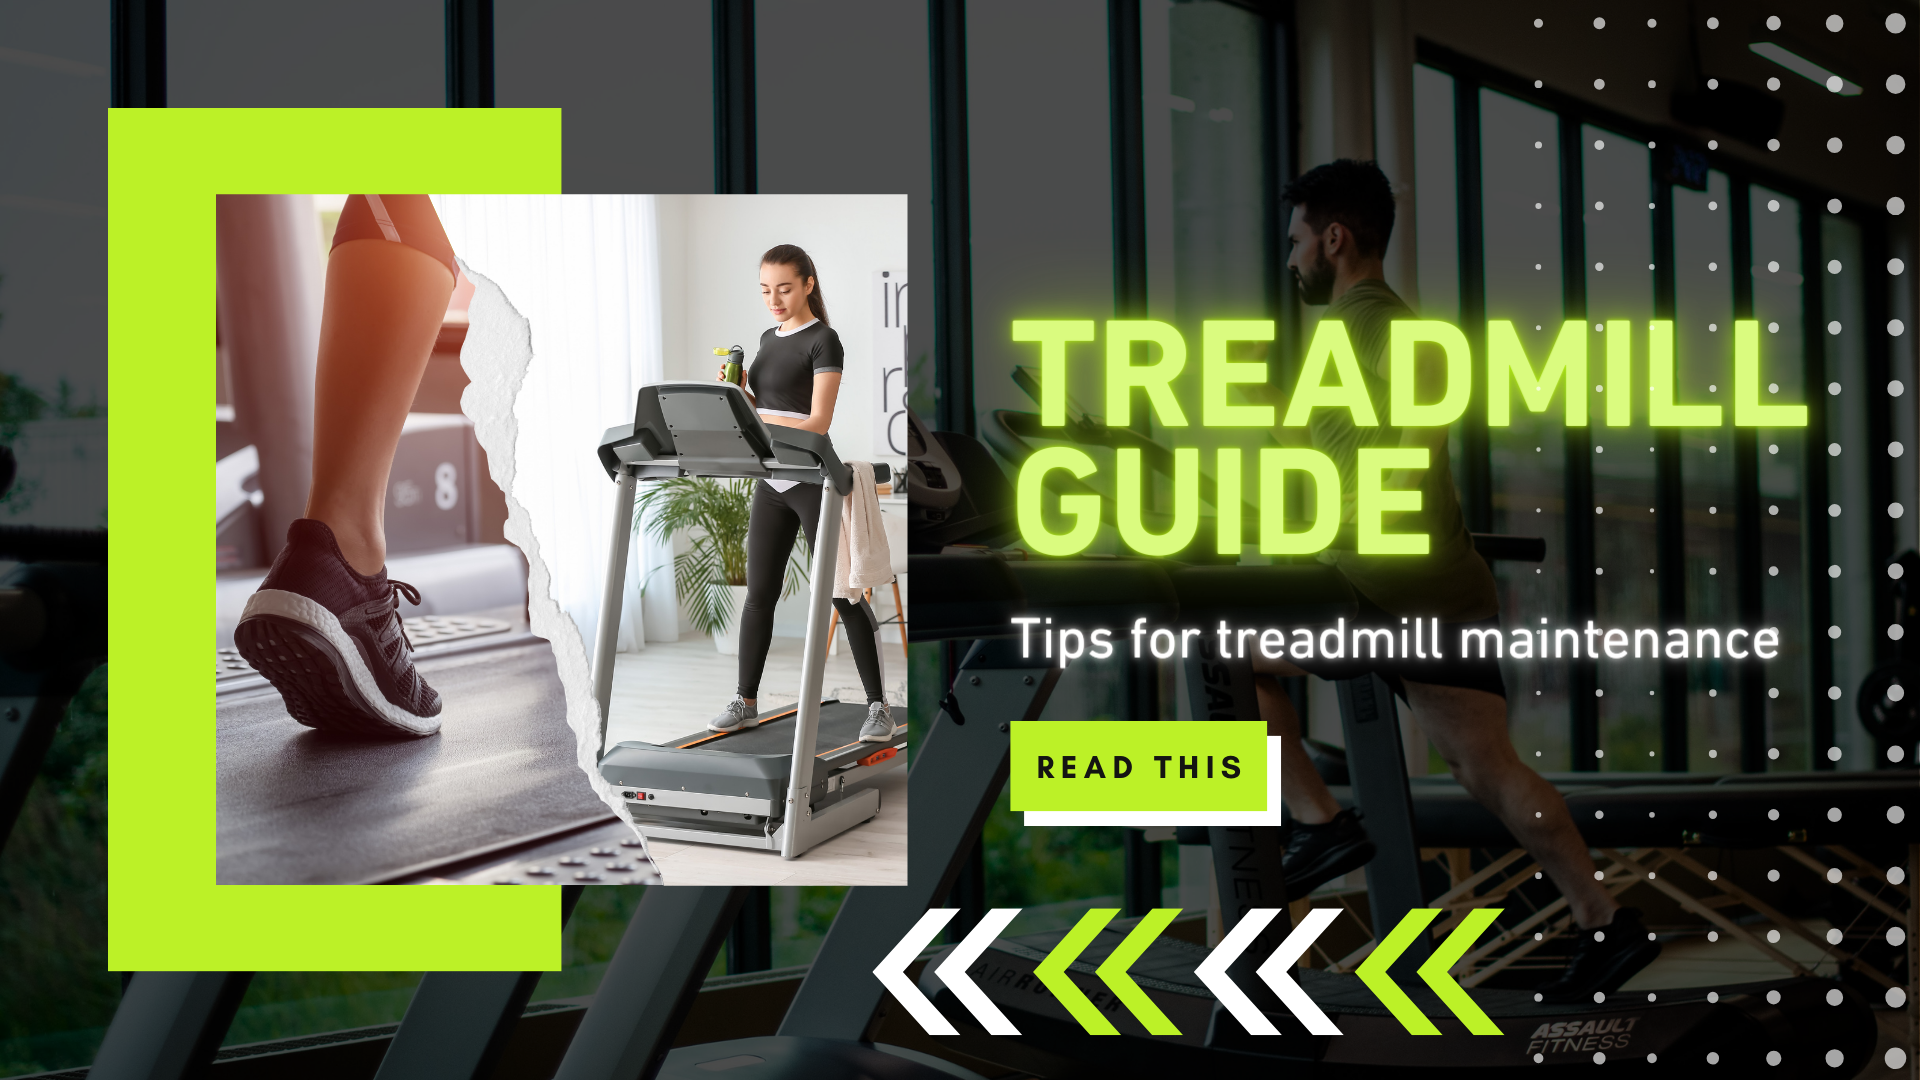 Treadmill Guide: Tips for Treadmill Maintenance